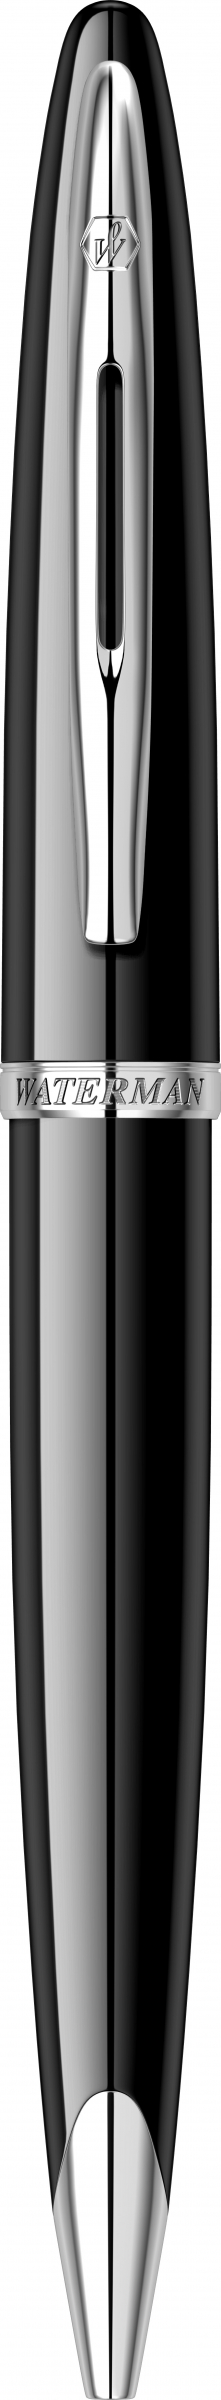 Waterman Romania